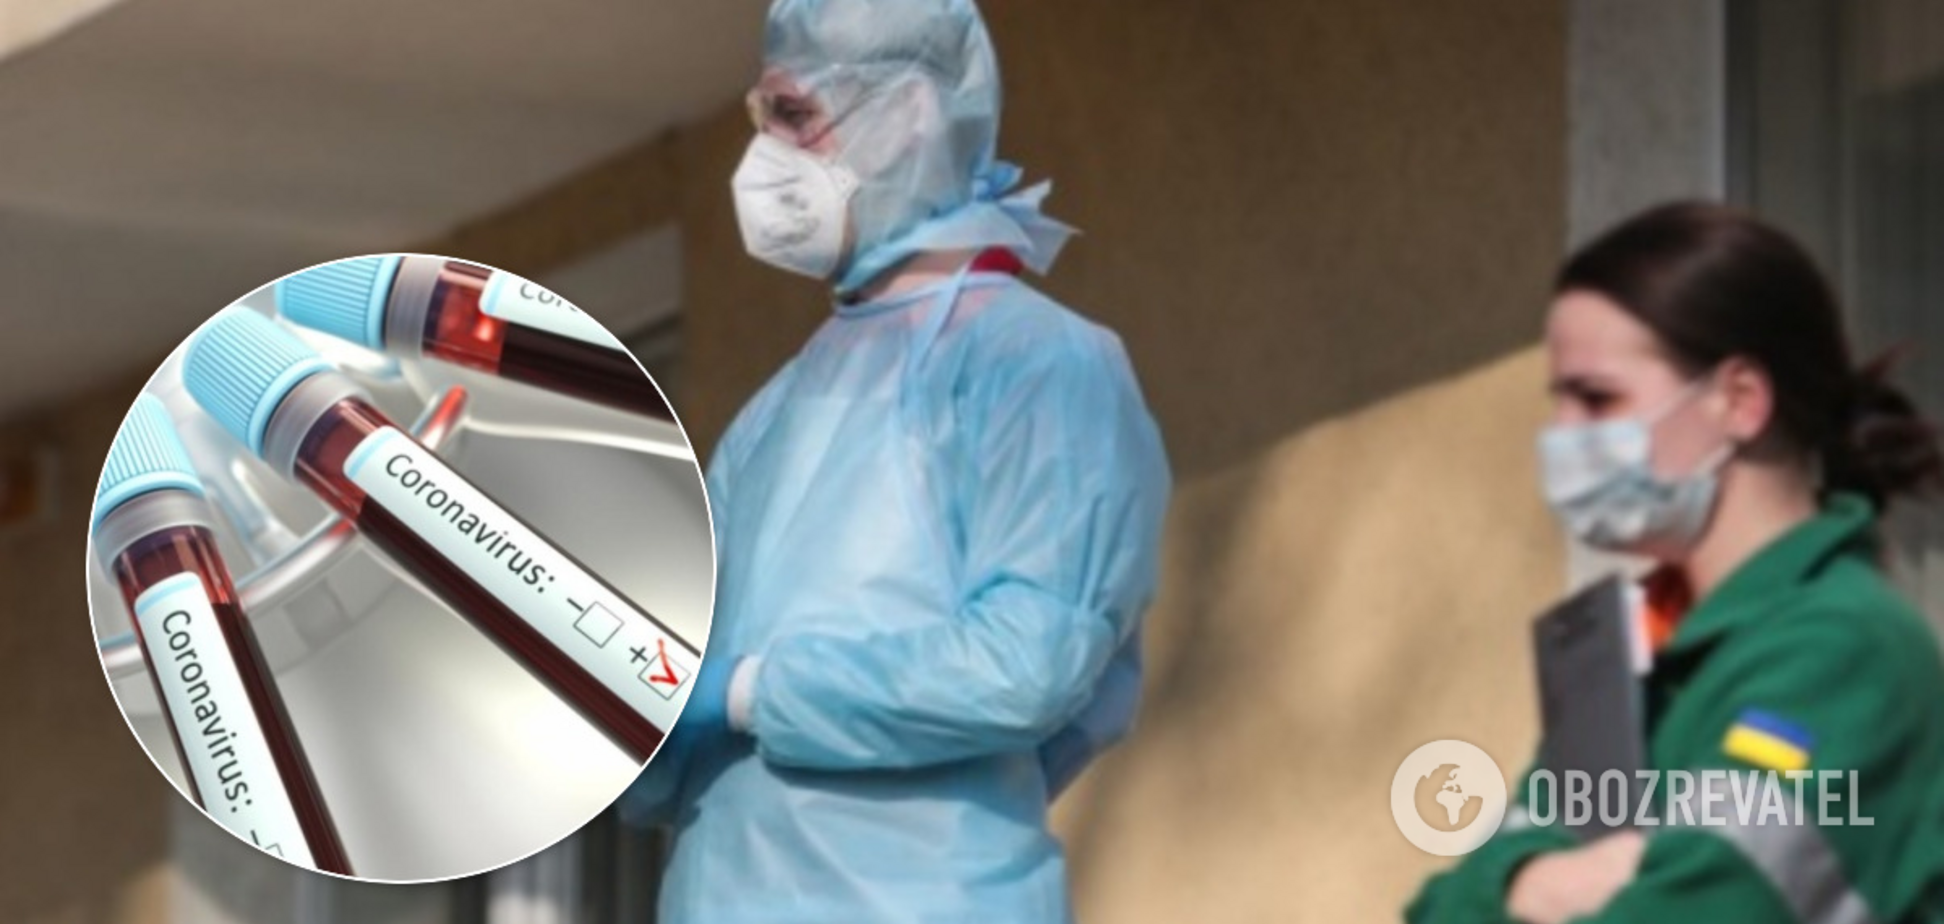 Було всього 37 років: на Рівненщині зафіксовано нову смерть від коронавірусу